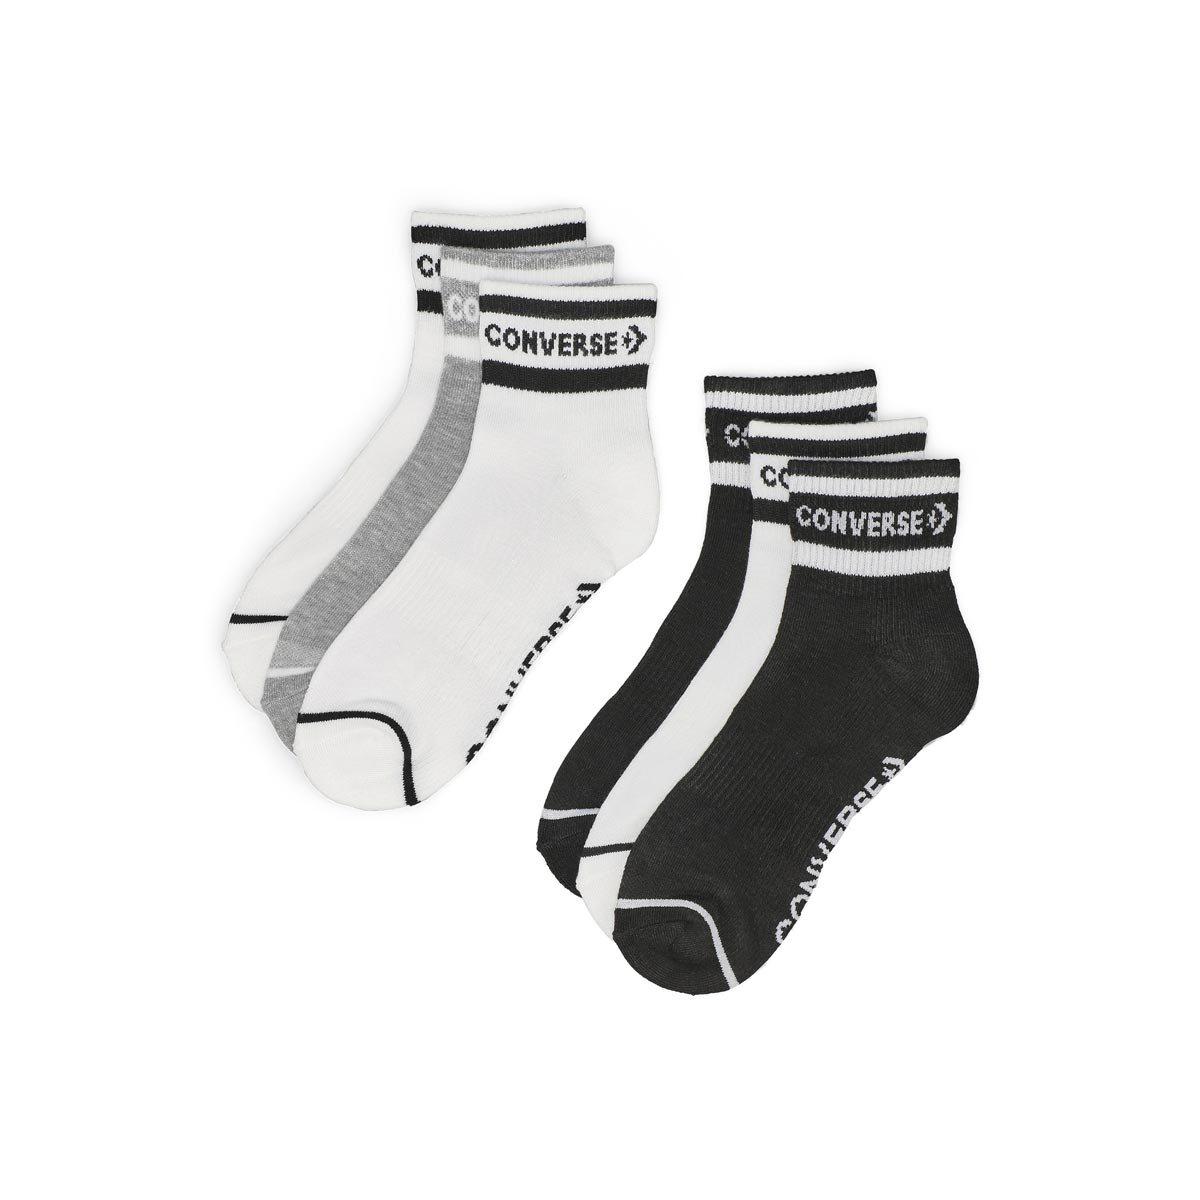 Women's Sport Inspired 6 Pack Quarter Sock - White/Black